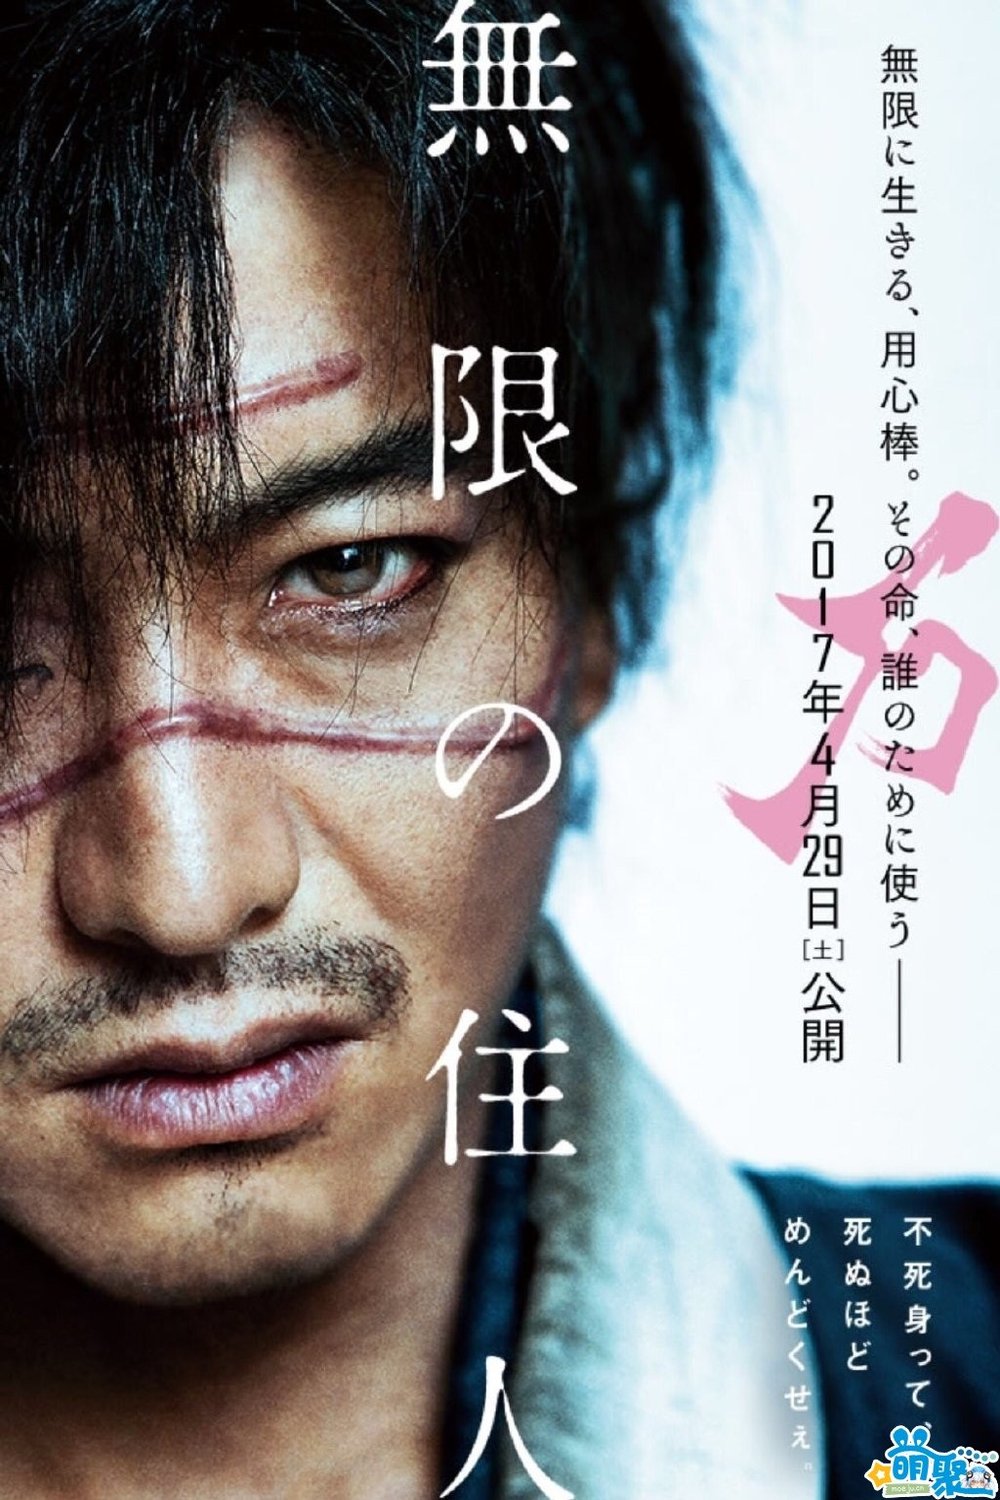 L'affiche originale du film Mugen no jûnin en japonais